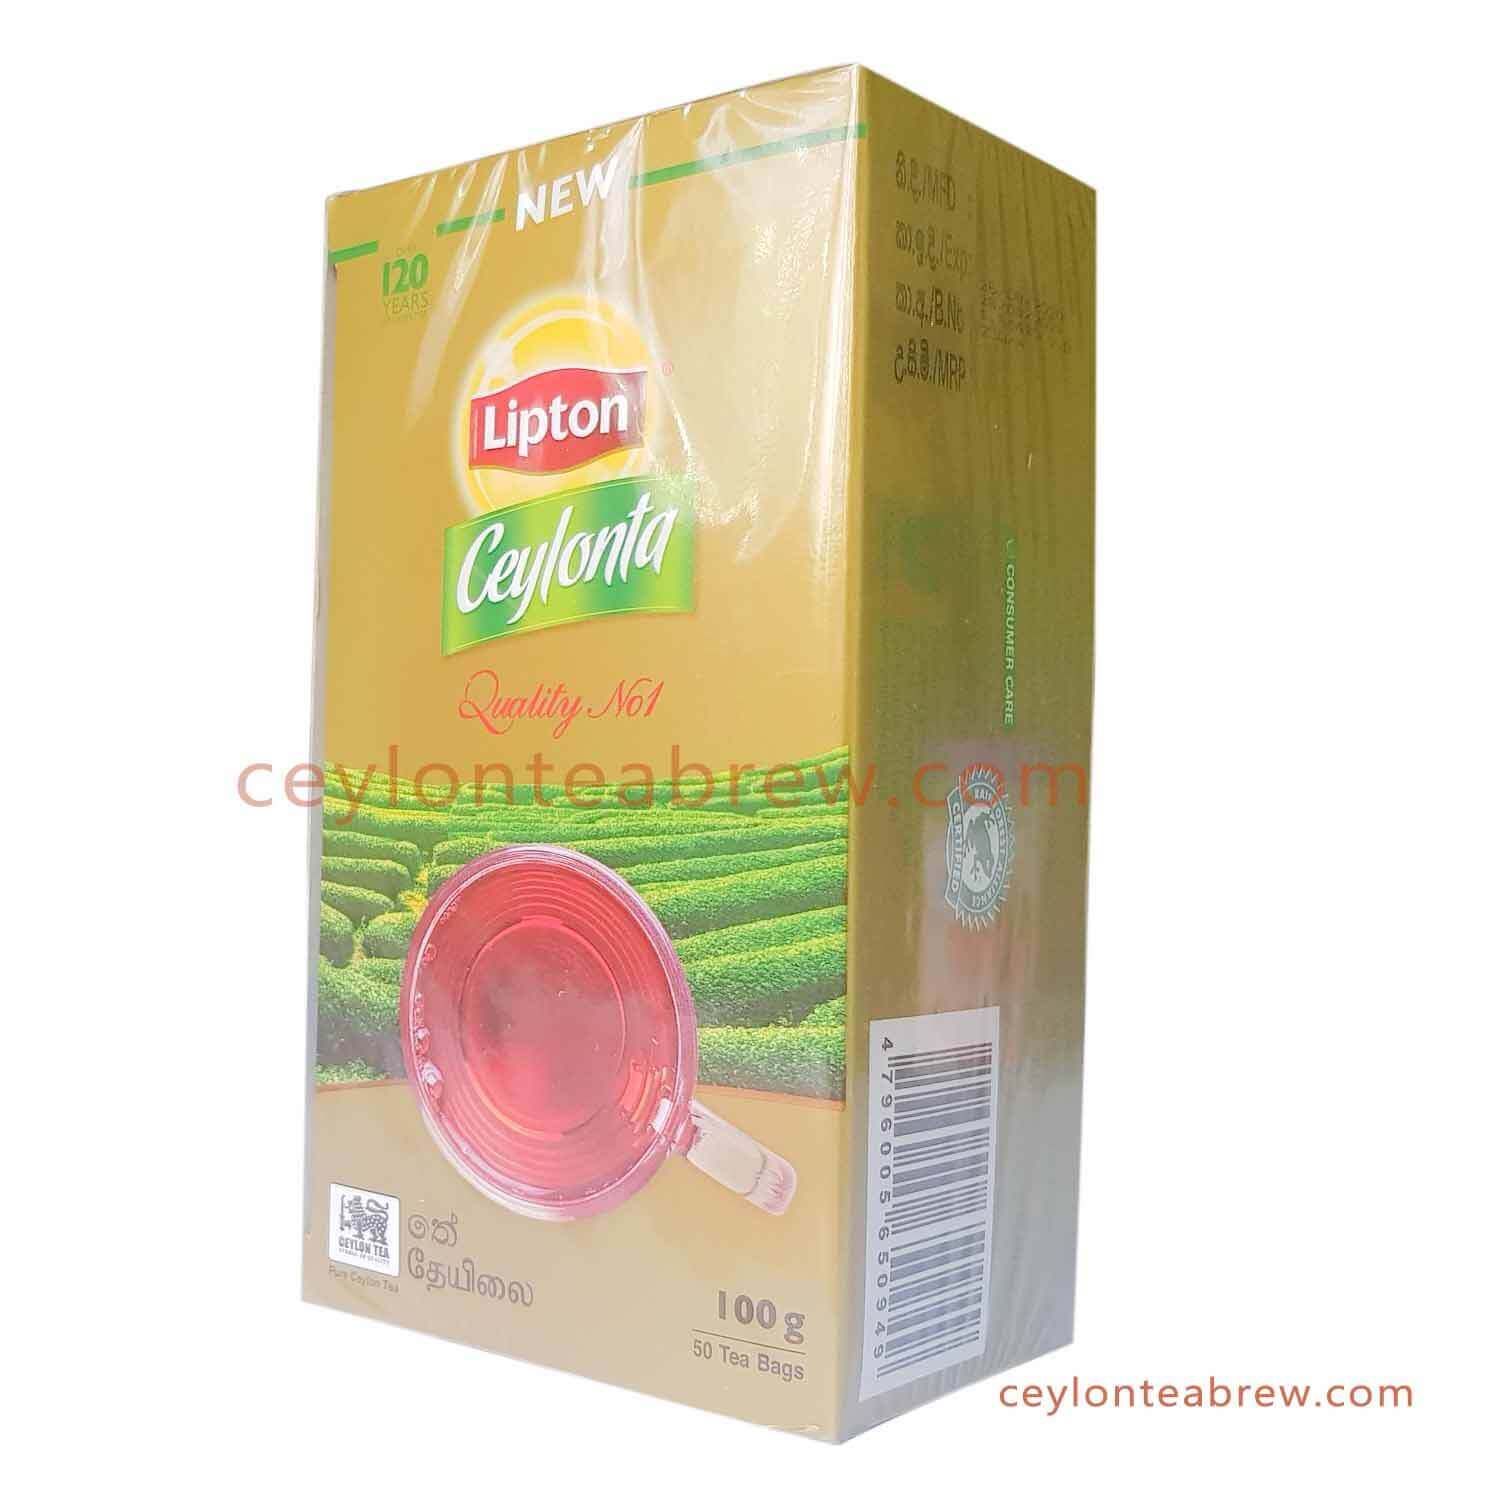 Lipton Pure Ceylon black tea